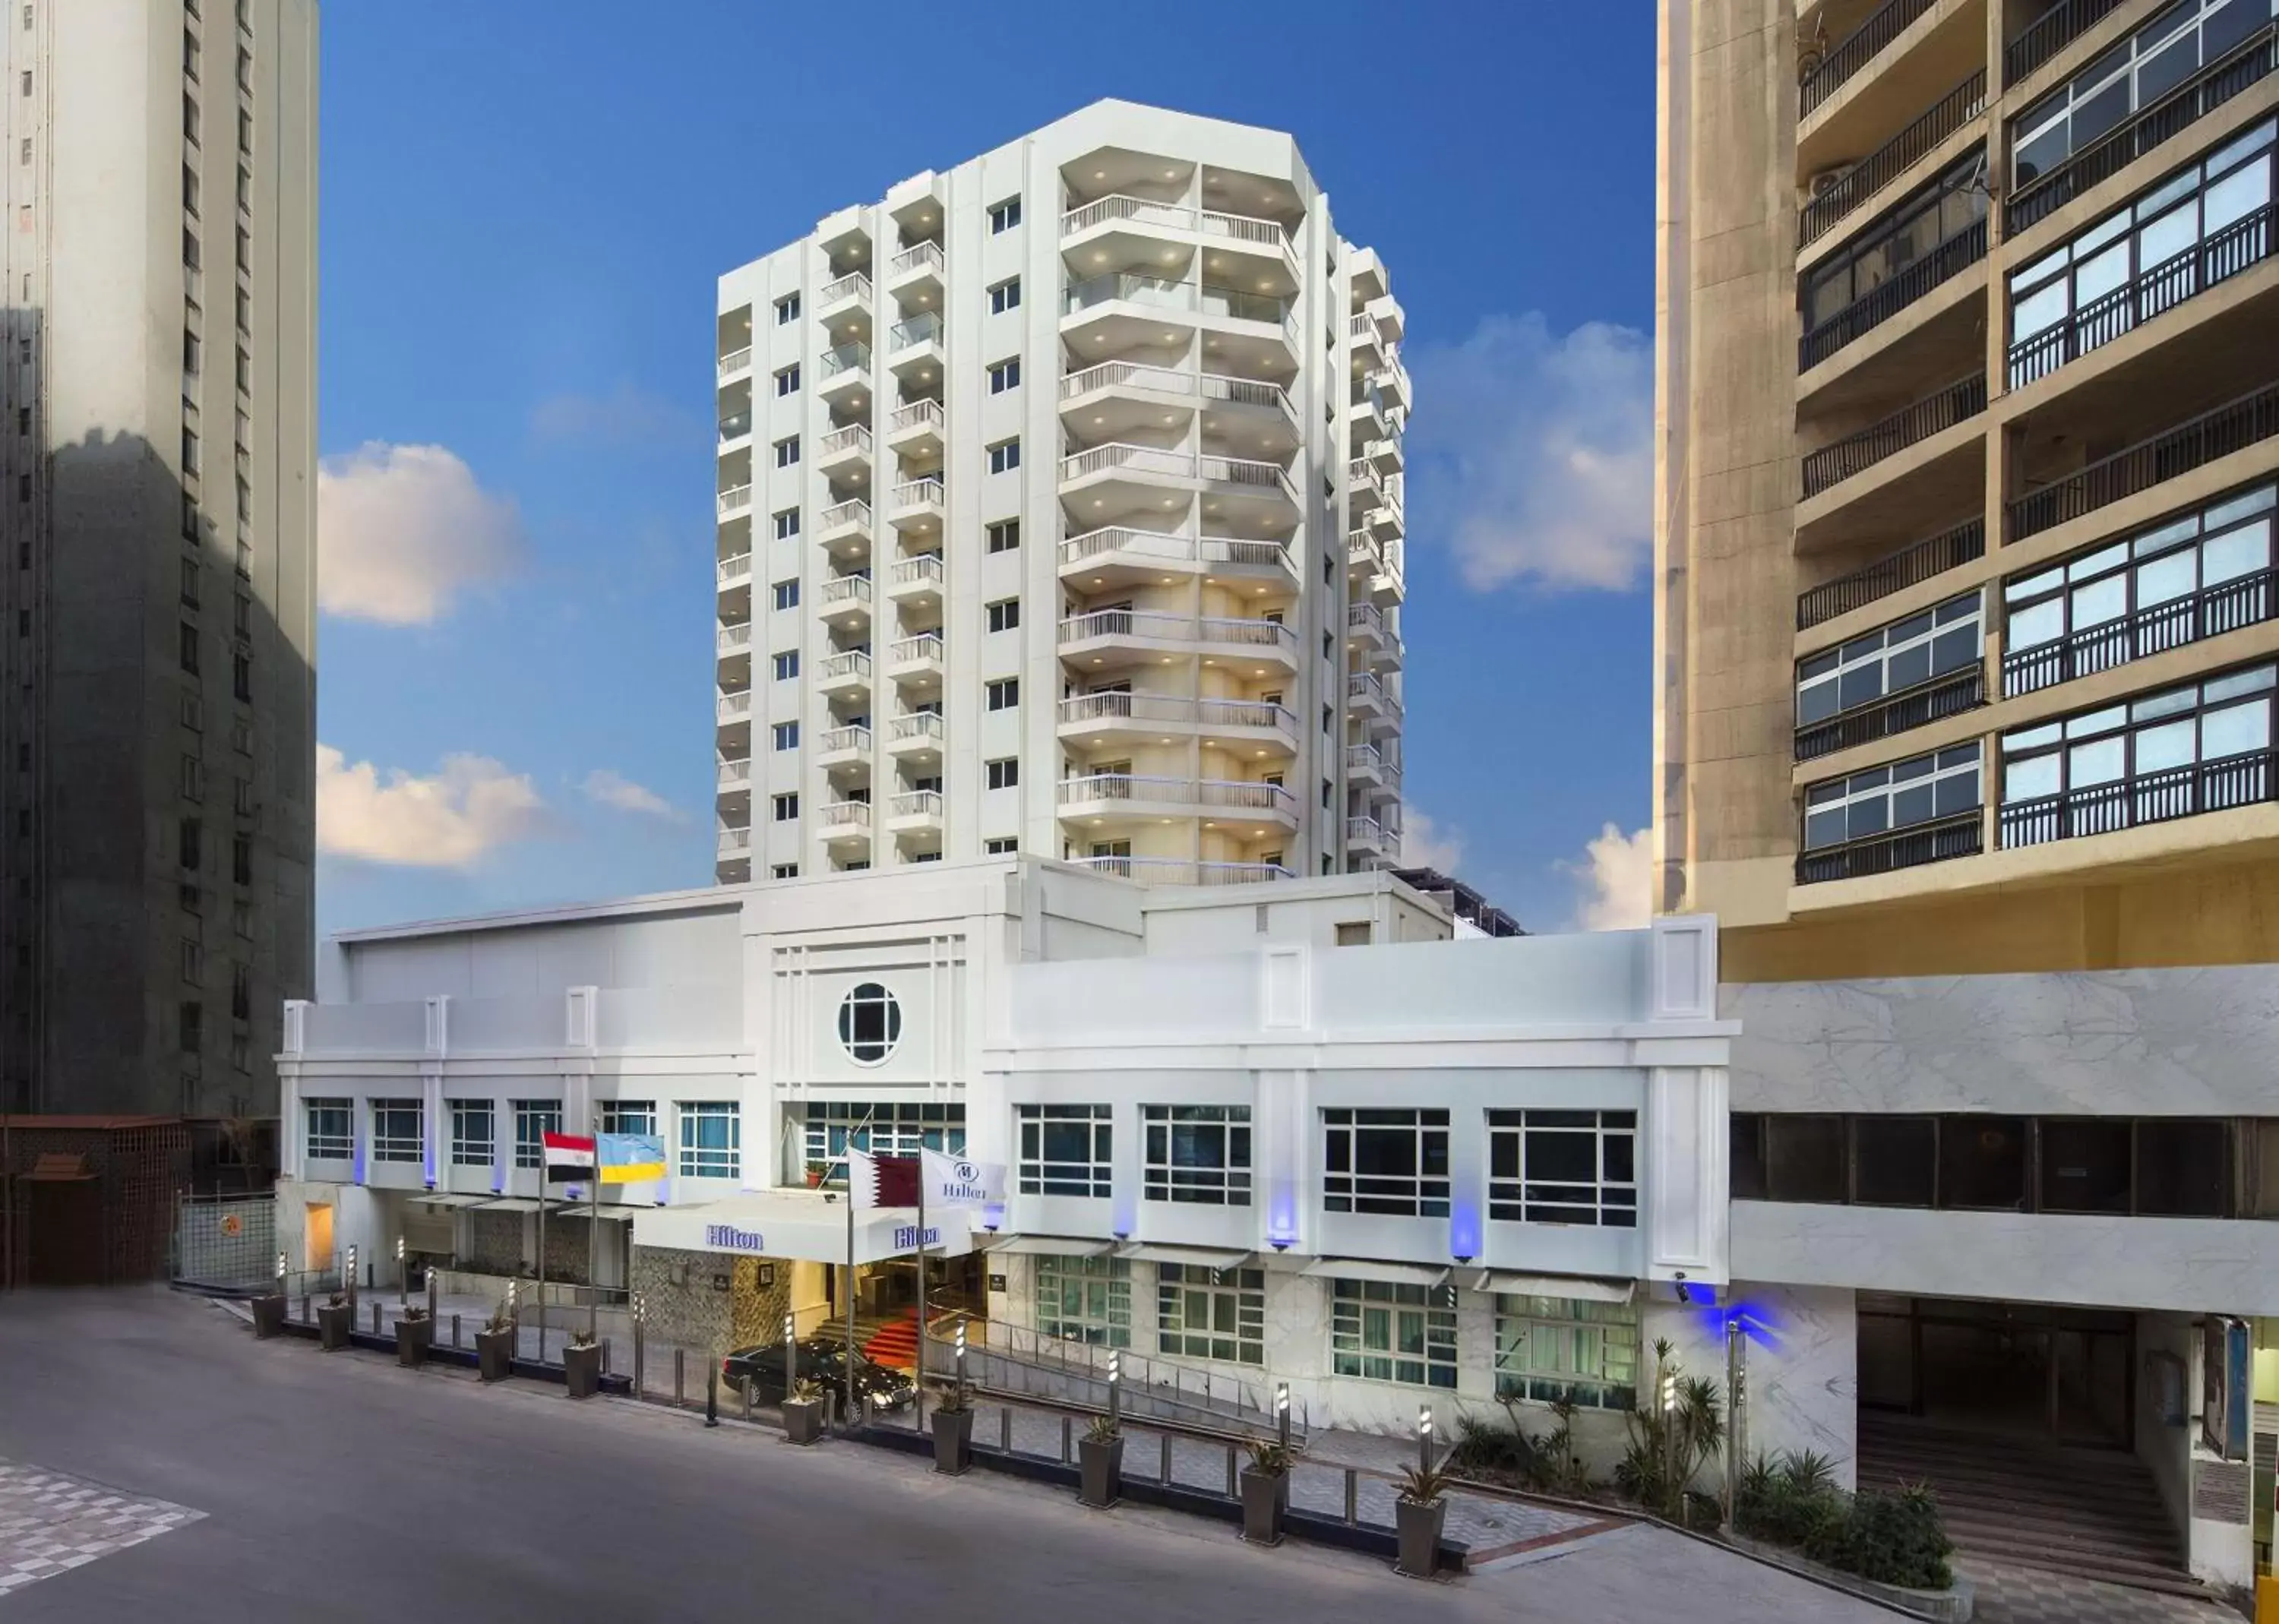 Property Building in Hilton Alexandria Corniche